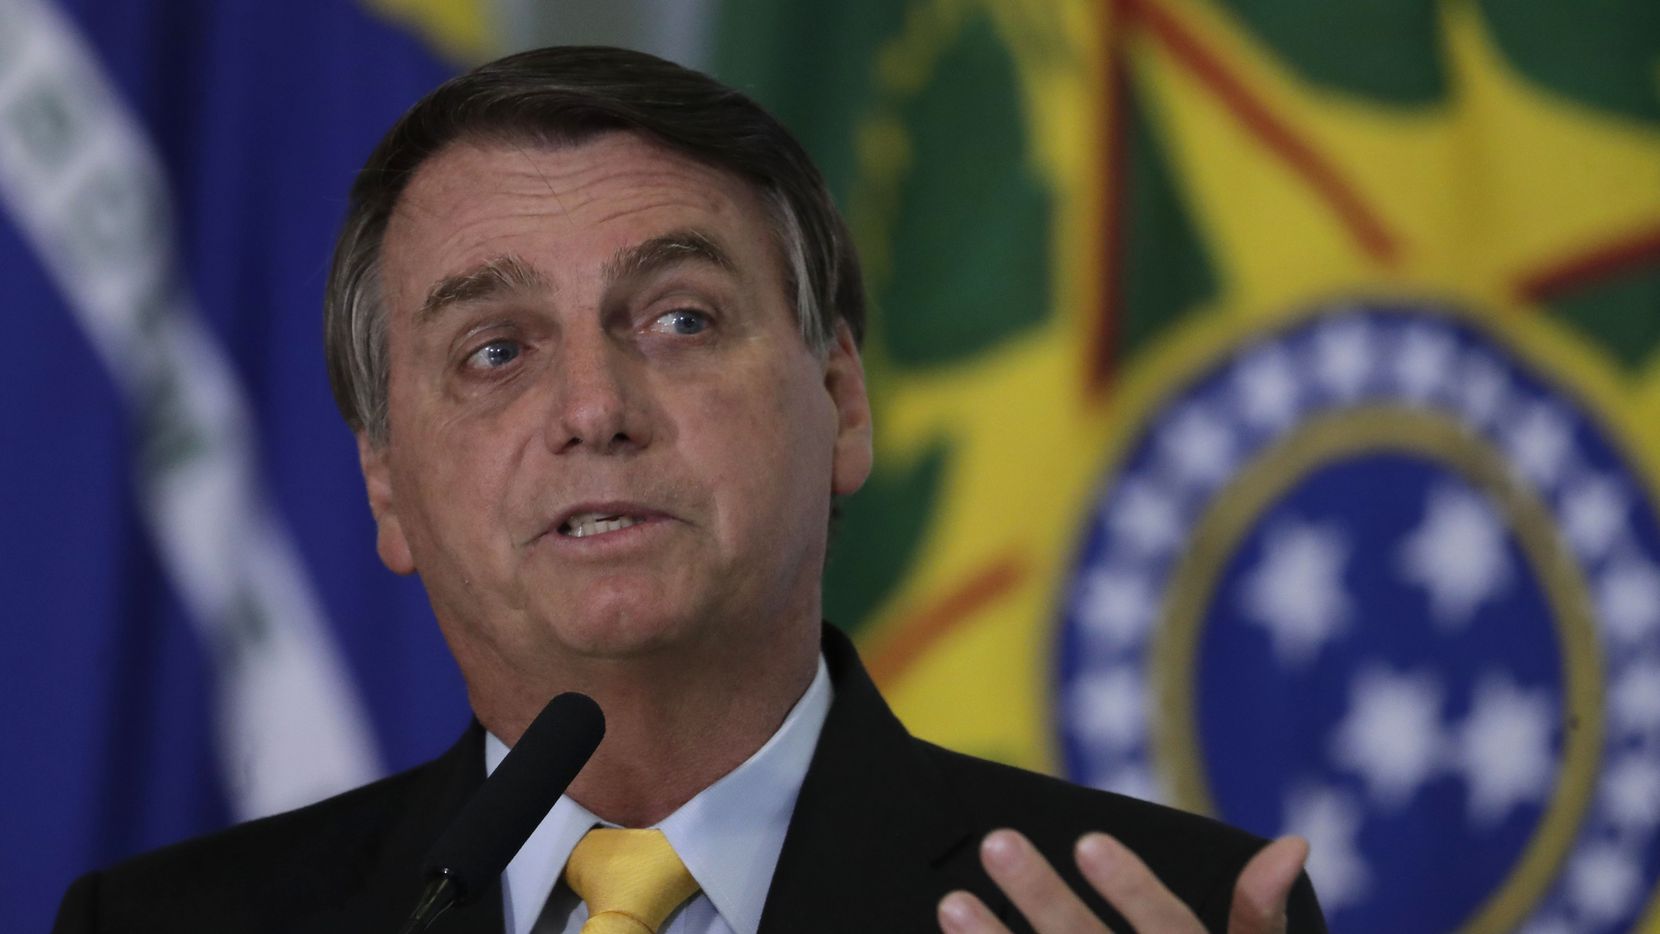 https://www.dallasnews.com/espanol/al-dia/noticias/2020/10/21/brasil-presidente-jair-bolsonaro-rechaza-comprar-46-millones-de-vacunas-contra-covid-19/